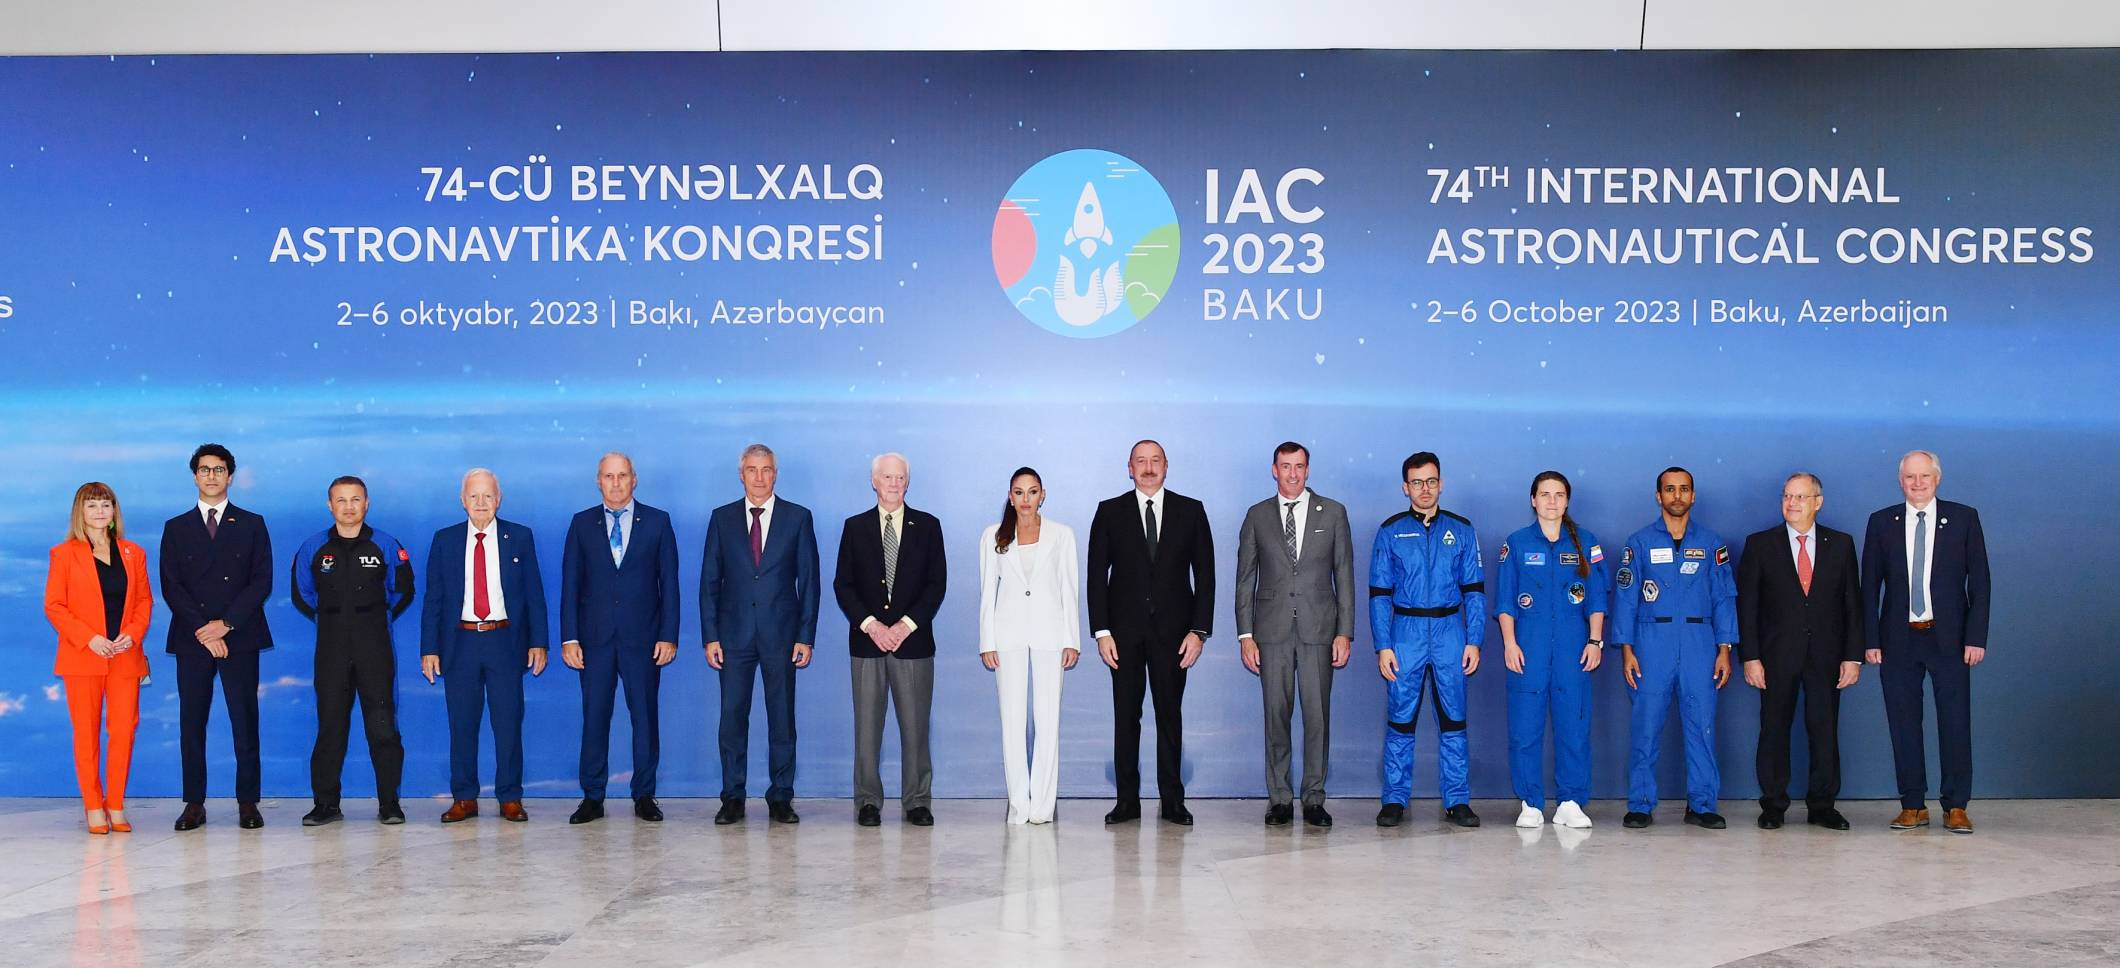 Ильхам Алиев и первая леди Мехрибан Алиева приняли участие в церемонии открытия 74-го Международного астронавтического конгресса